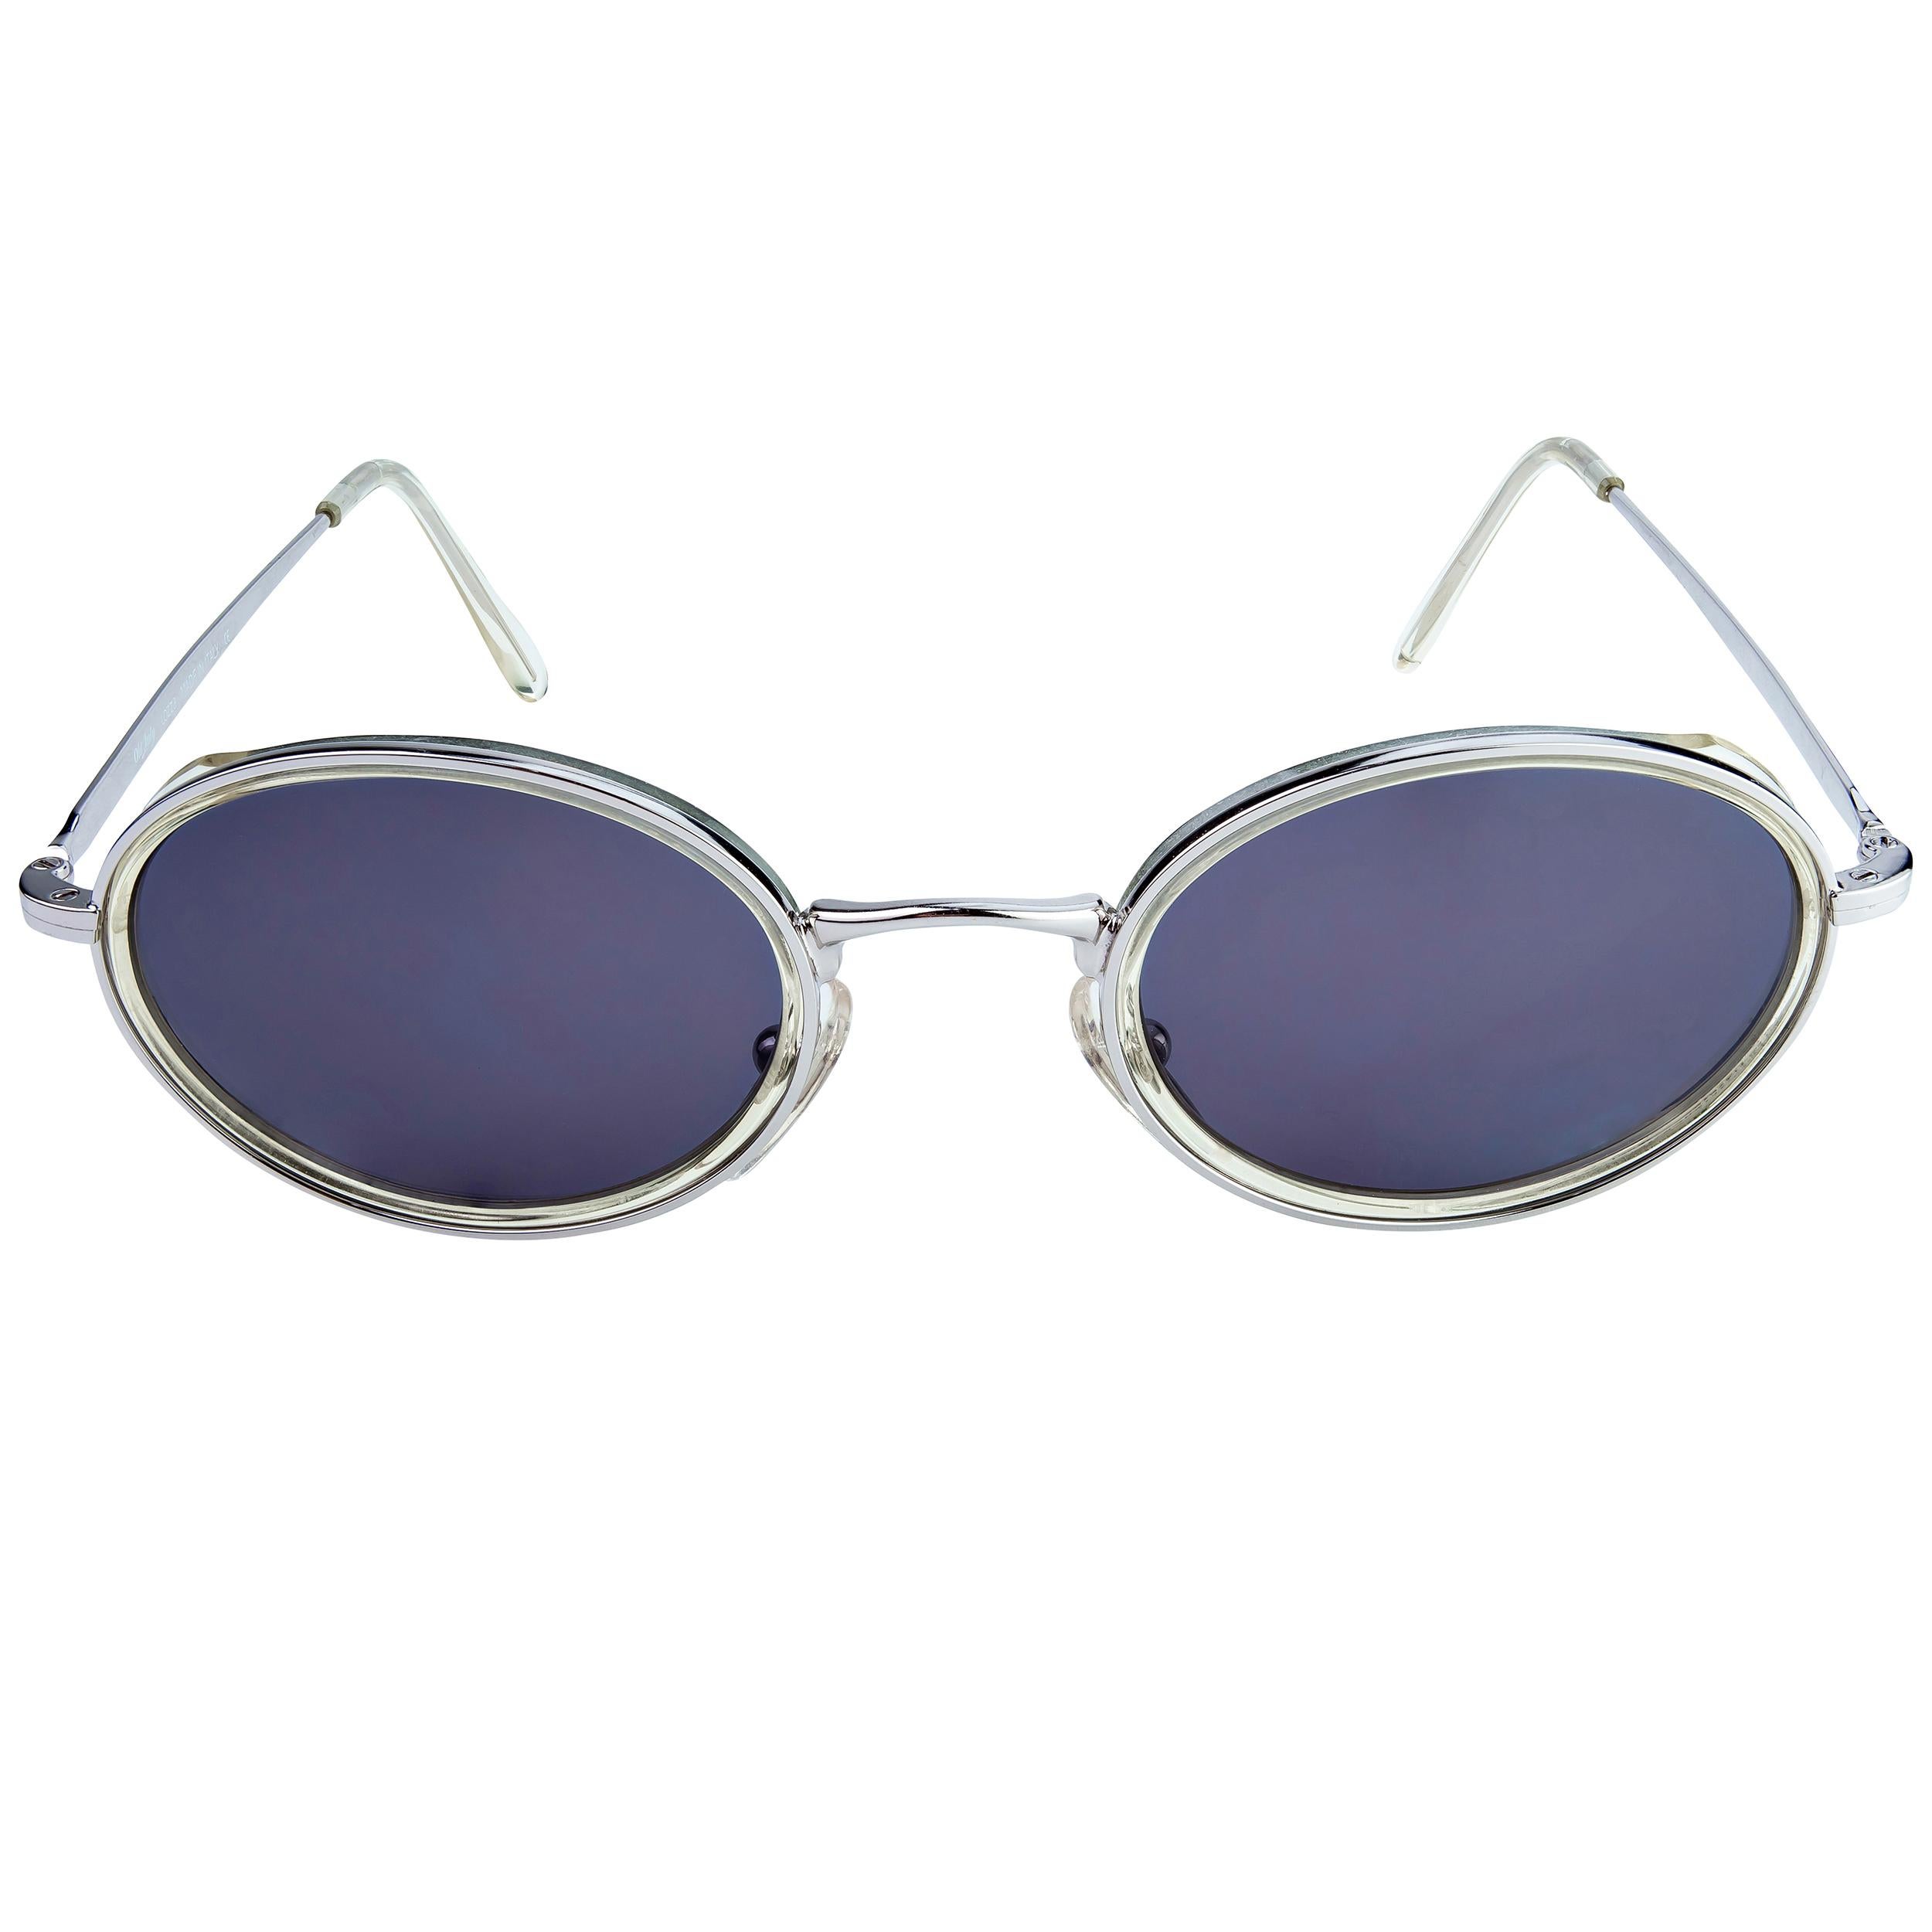 Lozza wurde 1878 gegründet und ist die älteste Brillenmarke Italiens, die bei der Auswahl von Stilen und Materialien immer Vorreiter war: in den 20er Jahren brachte sie die erste Sonnenbrille aus Zellulose auf den Markt, in den 30er Jahren die